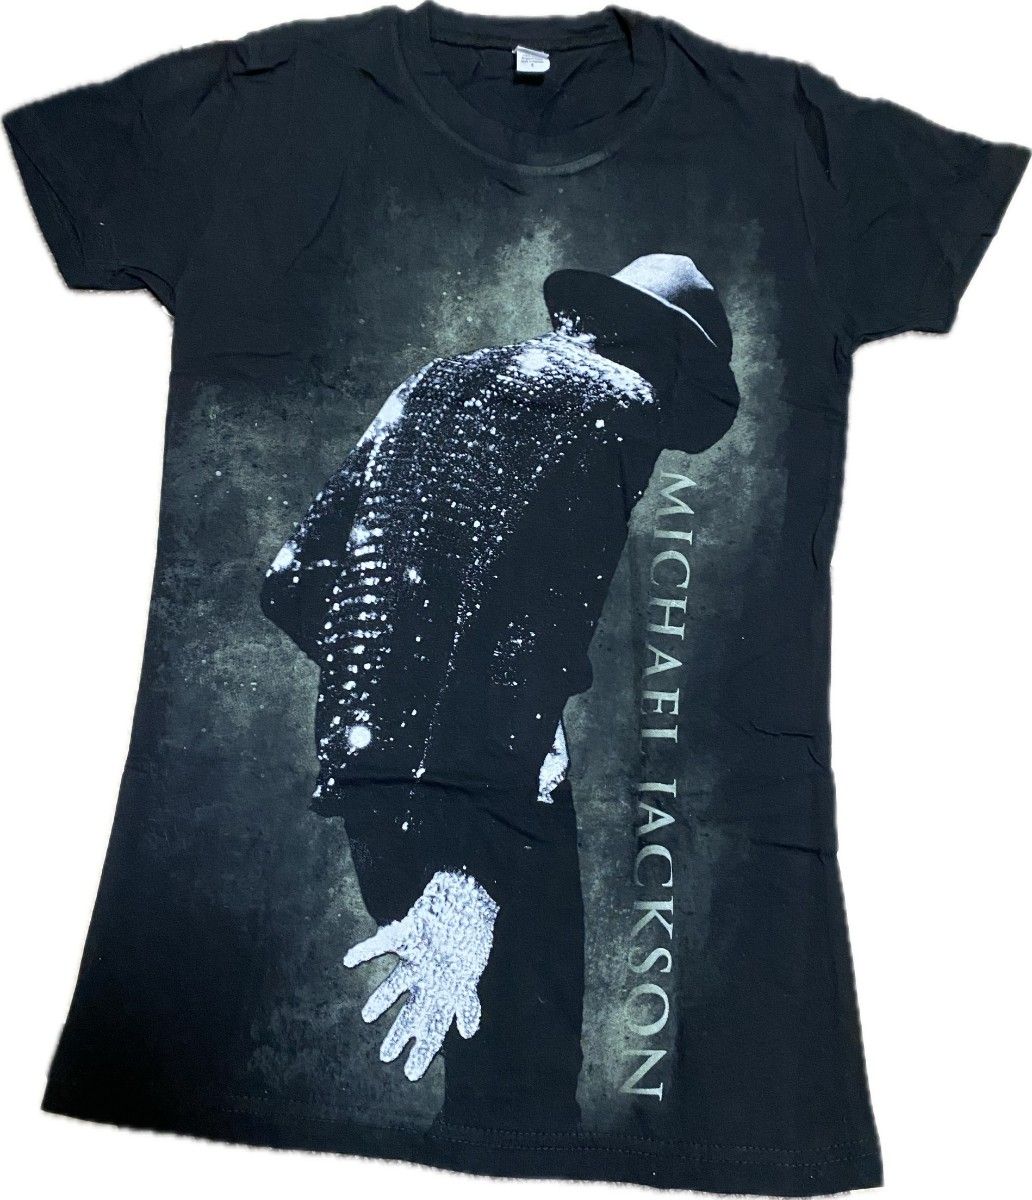 Michael Jackson マイケル・ジャクソン Tシャツ 黒 ロゴ イラスト プリント バンド  